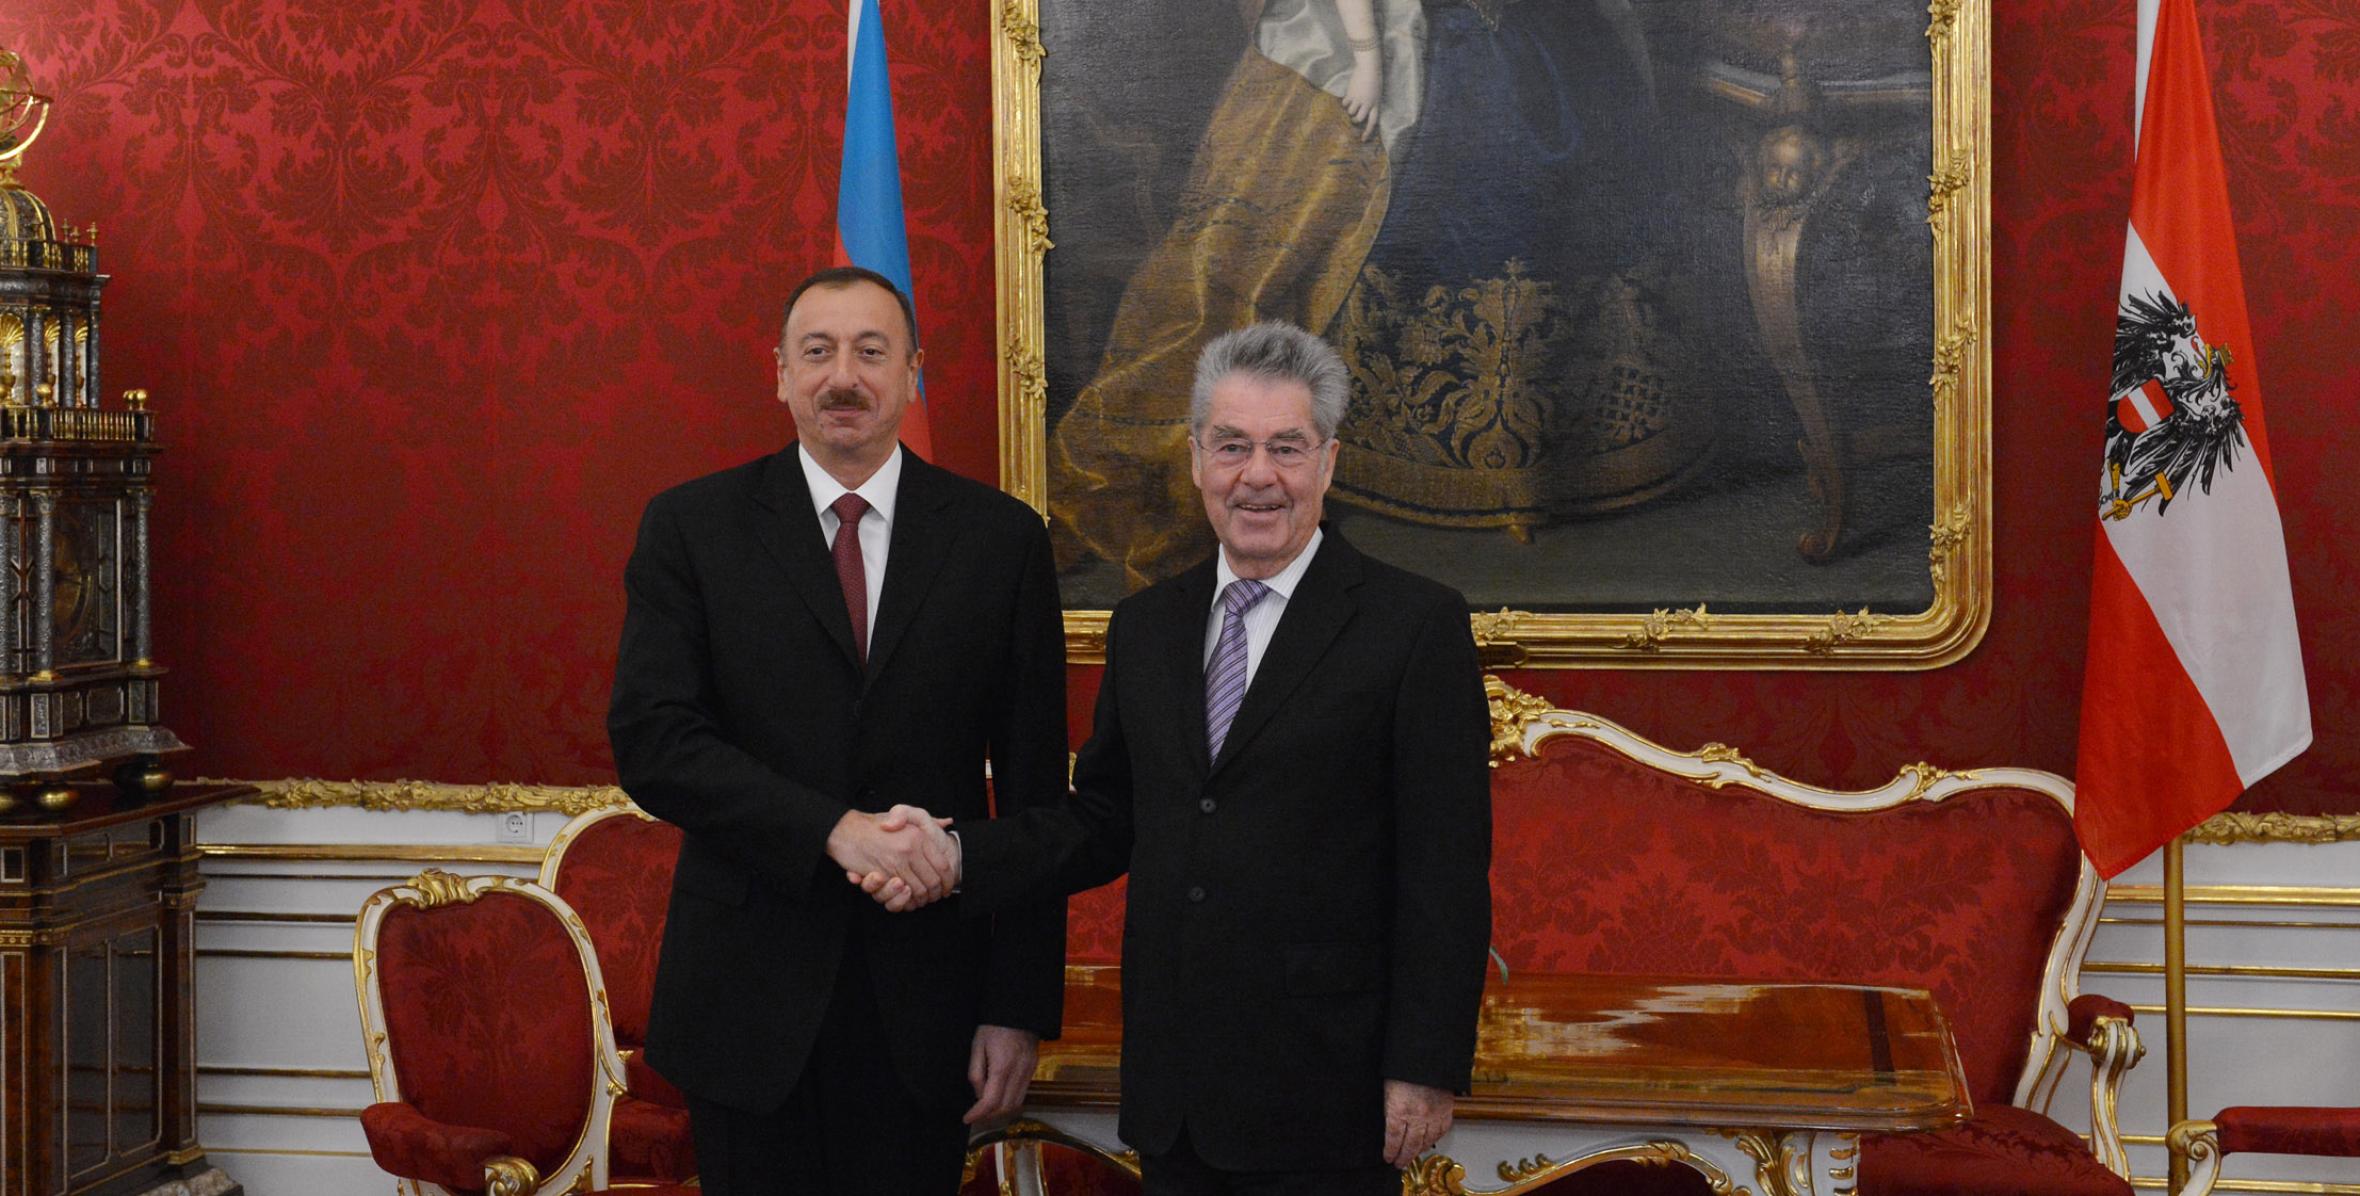 Ilham Aliyev met with Austrian President Heinz Fischer